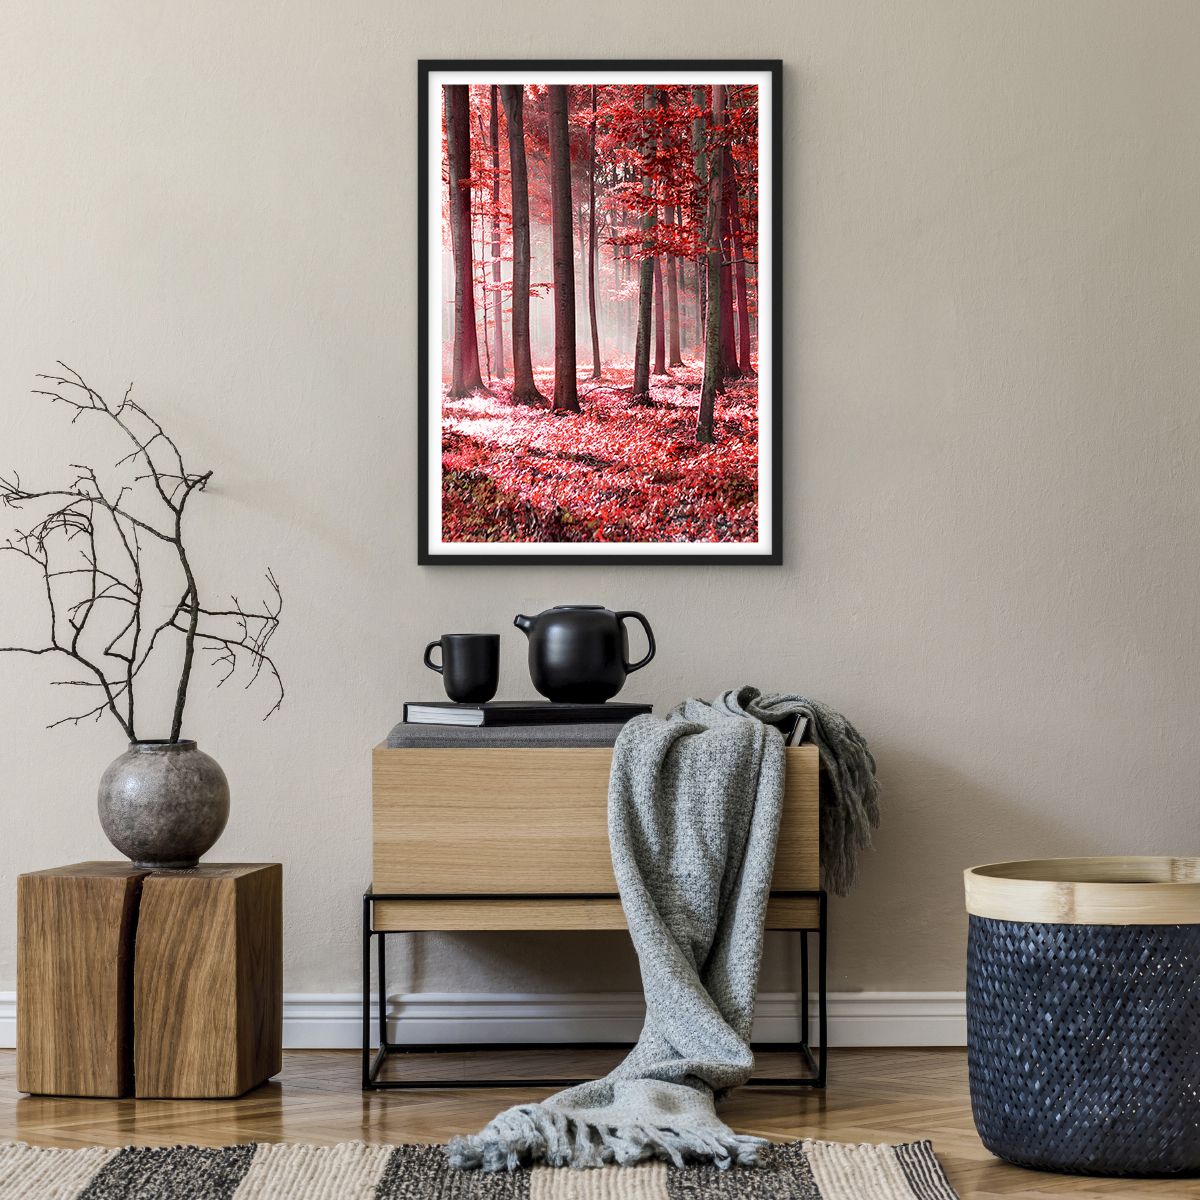 Poster in einem schwarzem Rahmen Landschaft, Poster in einem schwarzem Rahmen Wald, Poster in einem schwarzem Rahmen Bäume, Poster in einem schwarzem Rahmen Natur, Poster in einem schwarzem Rahmen Rote Blätter